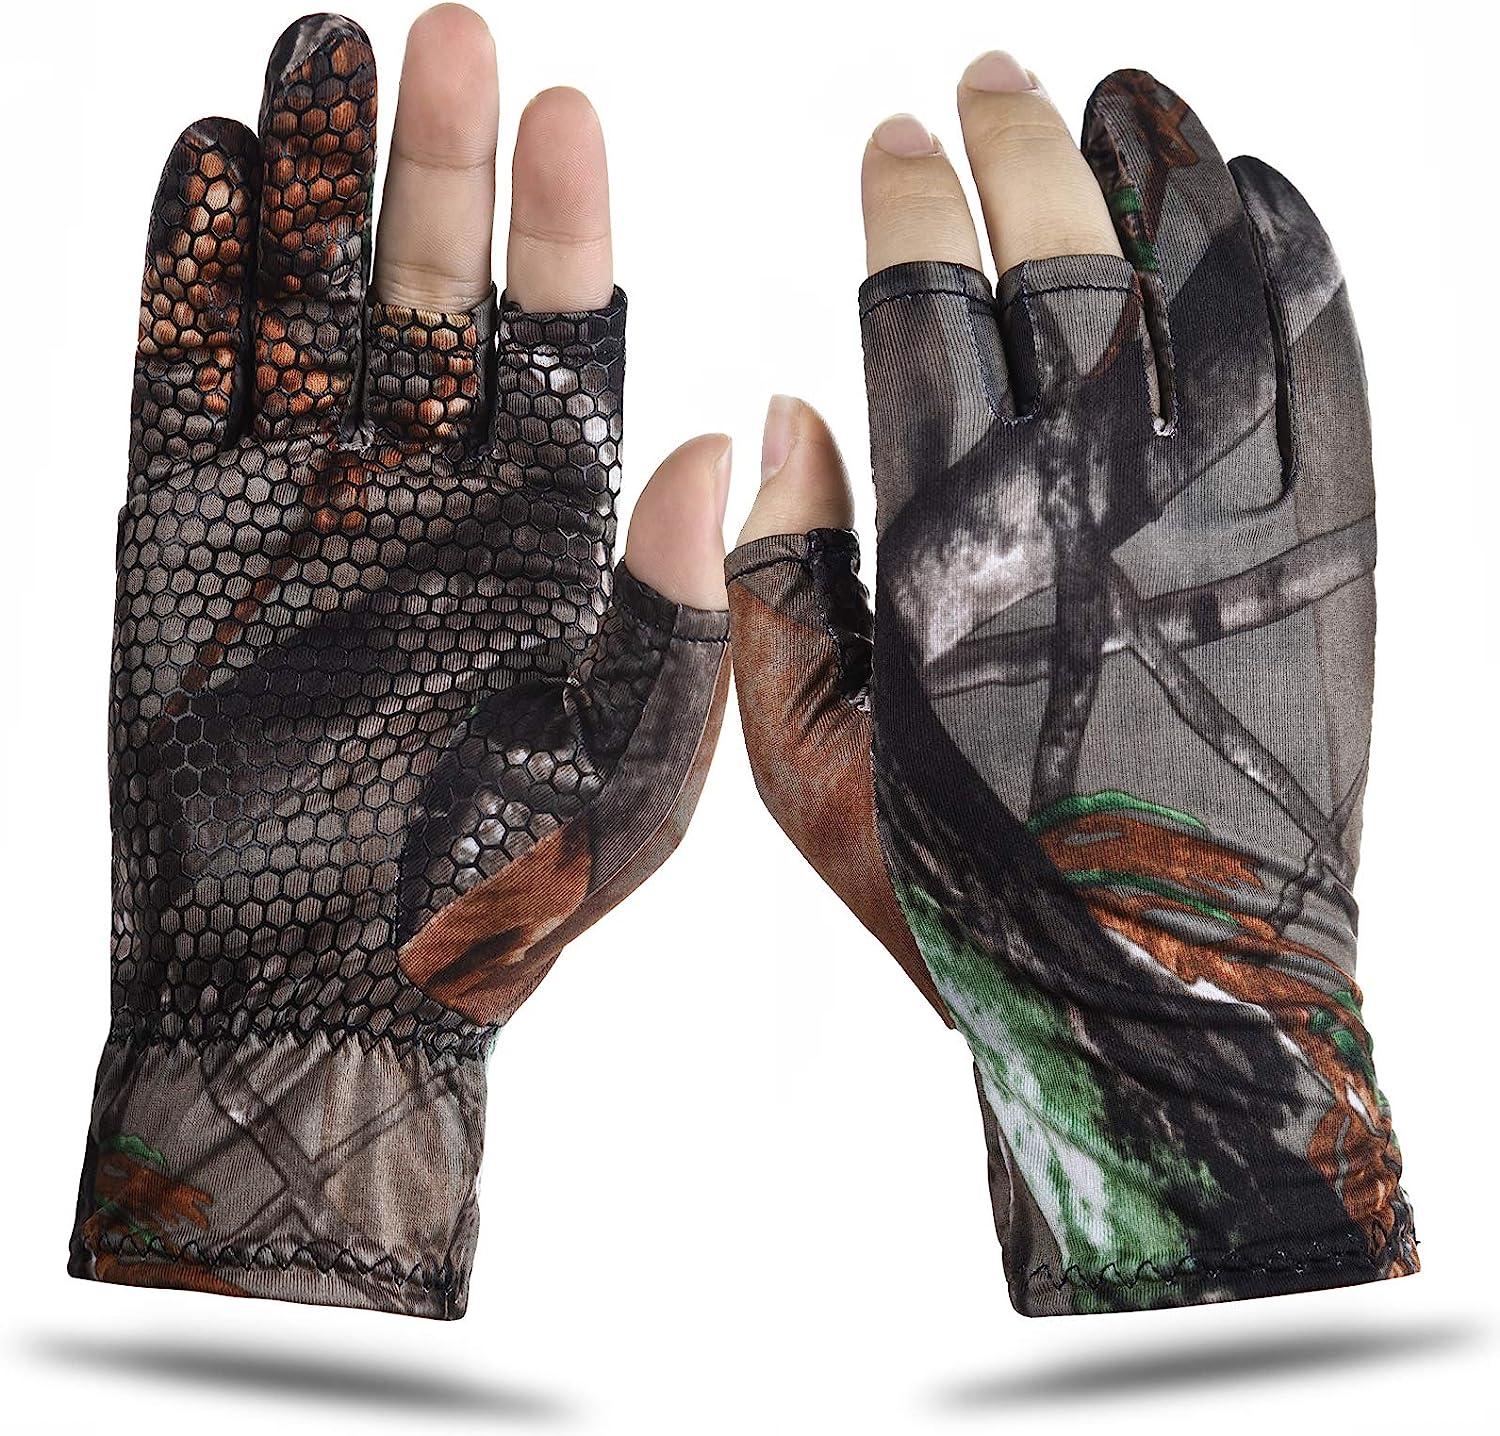 EAmber Camouflage Hunting Gloves Fingerless Gloves Pro Anti-Slip